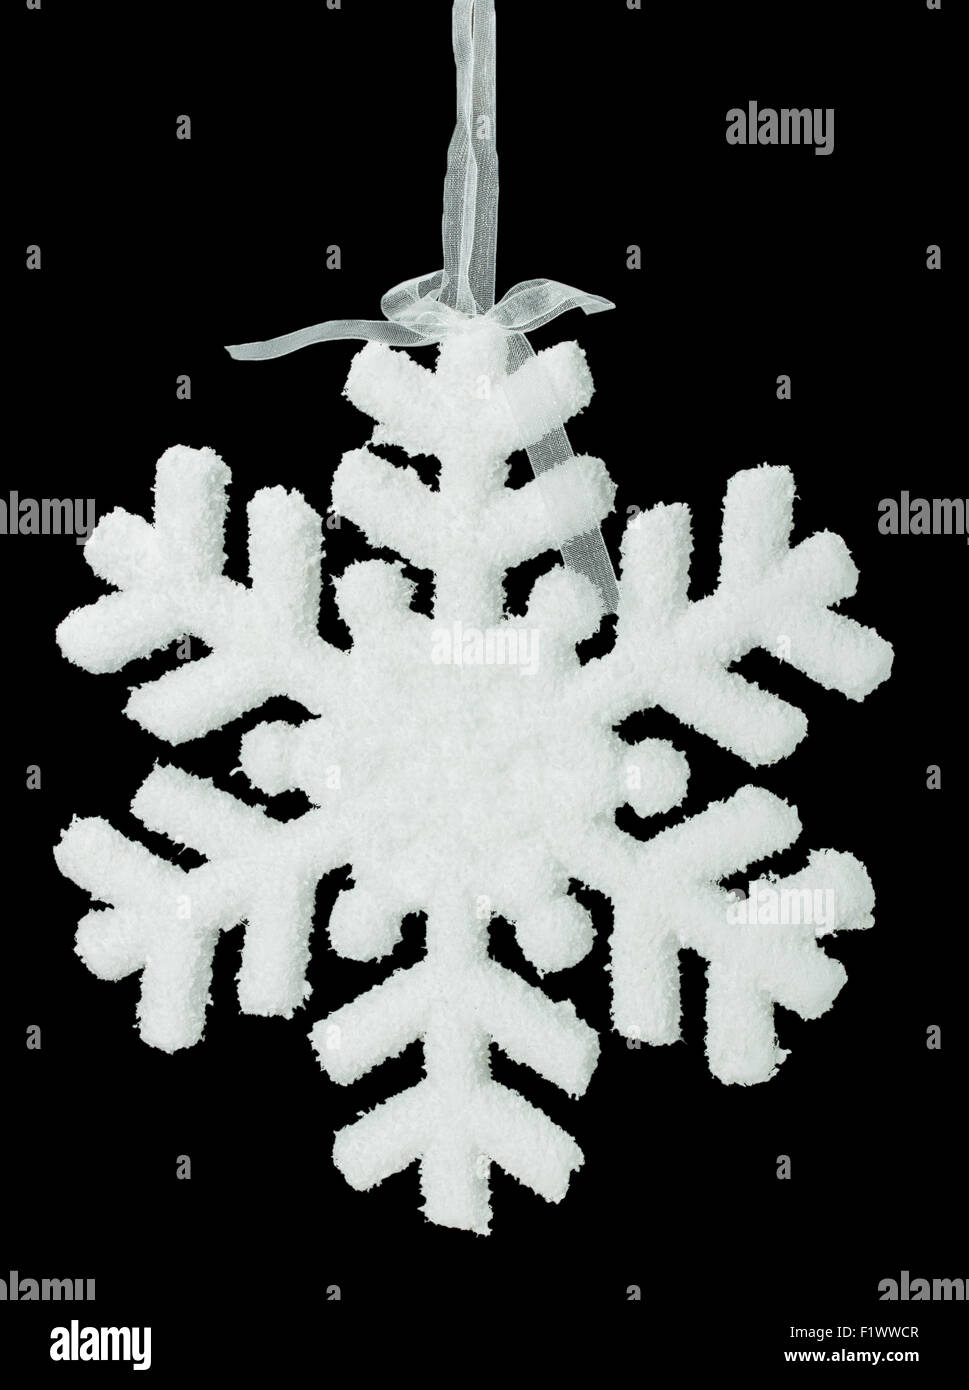 White snowflake on a black background. Stock Photo